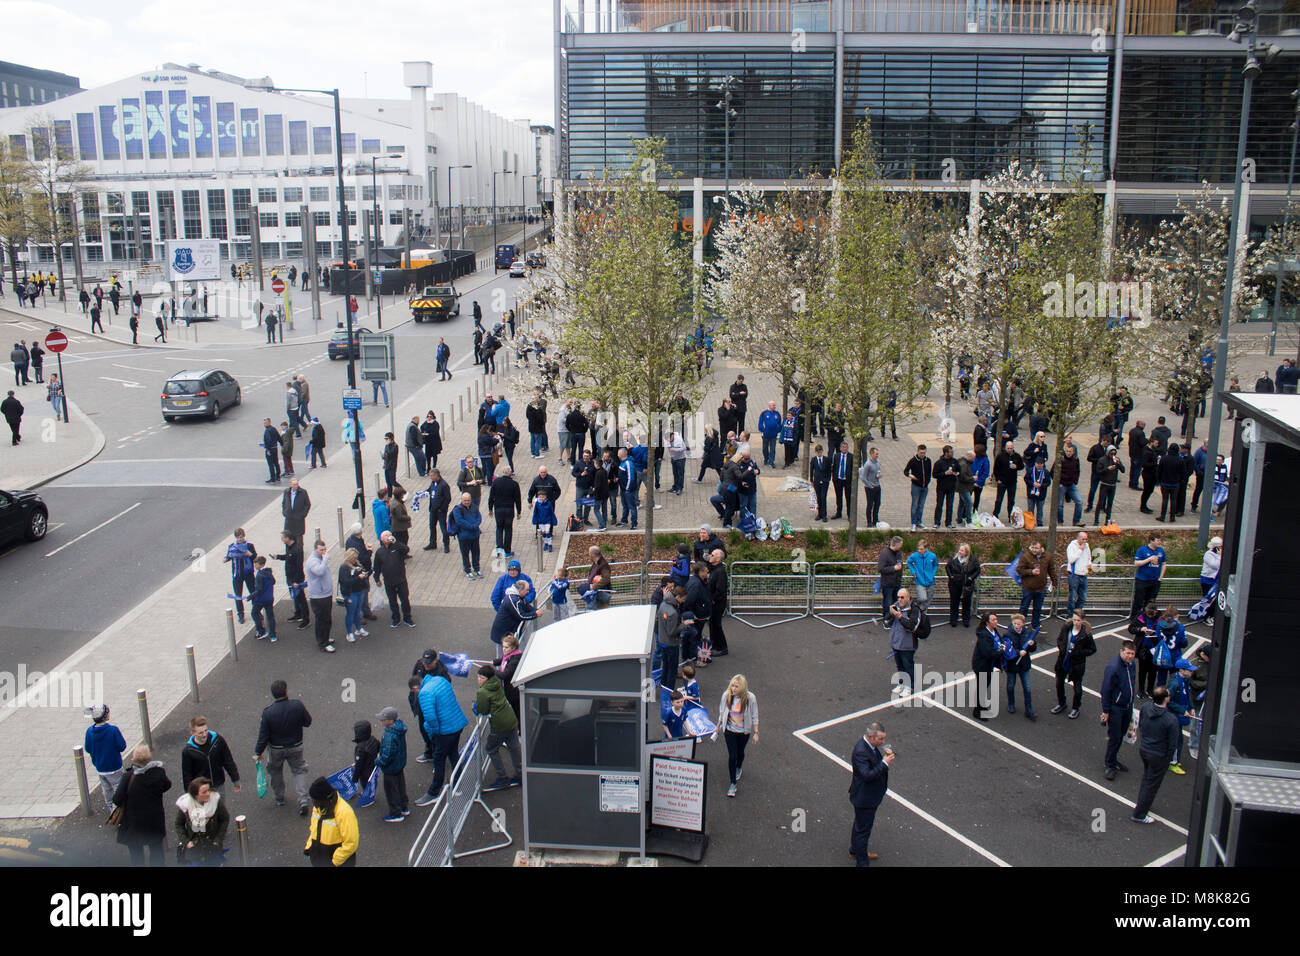 Everton football club fans vestido de azul en el estadio de Wembley en Londres Foto de stock